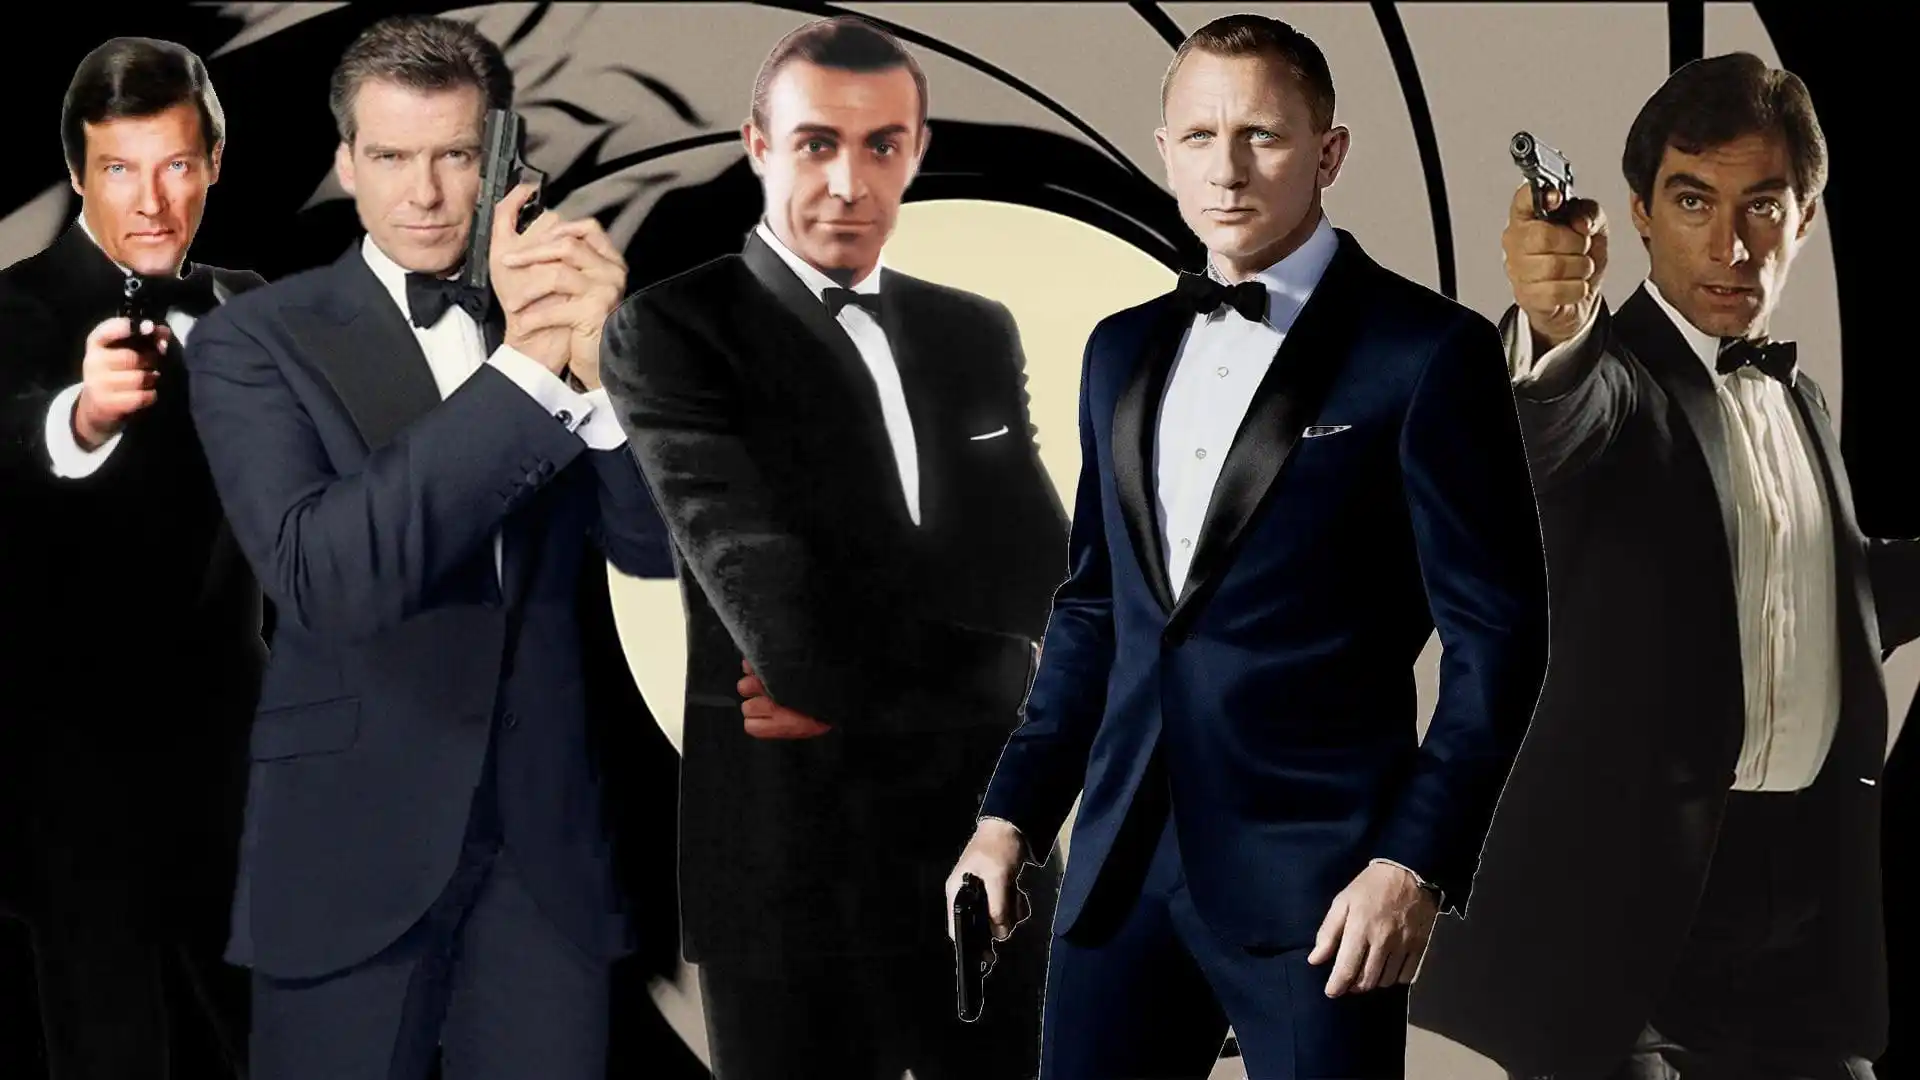 Quien Sera El Nuevo James Bond Despues De Daniel Craig Que Se Sabe Showland